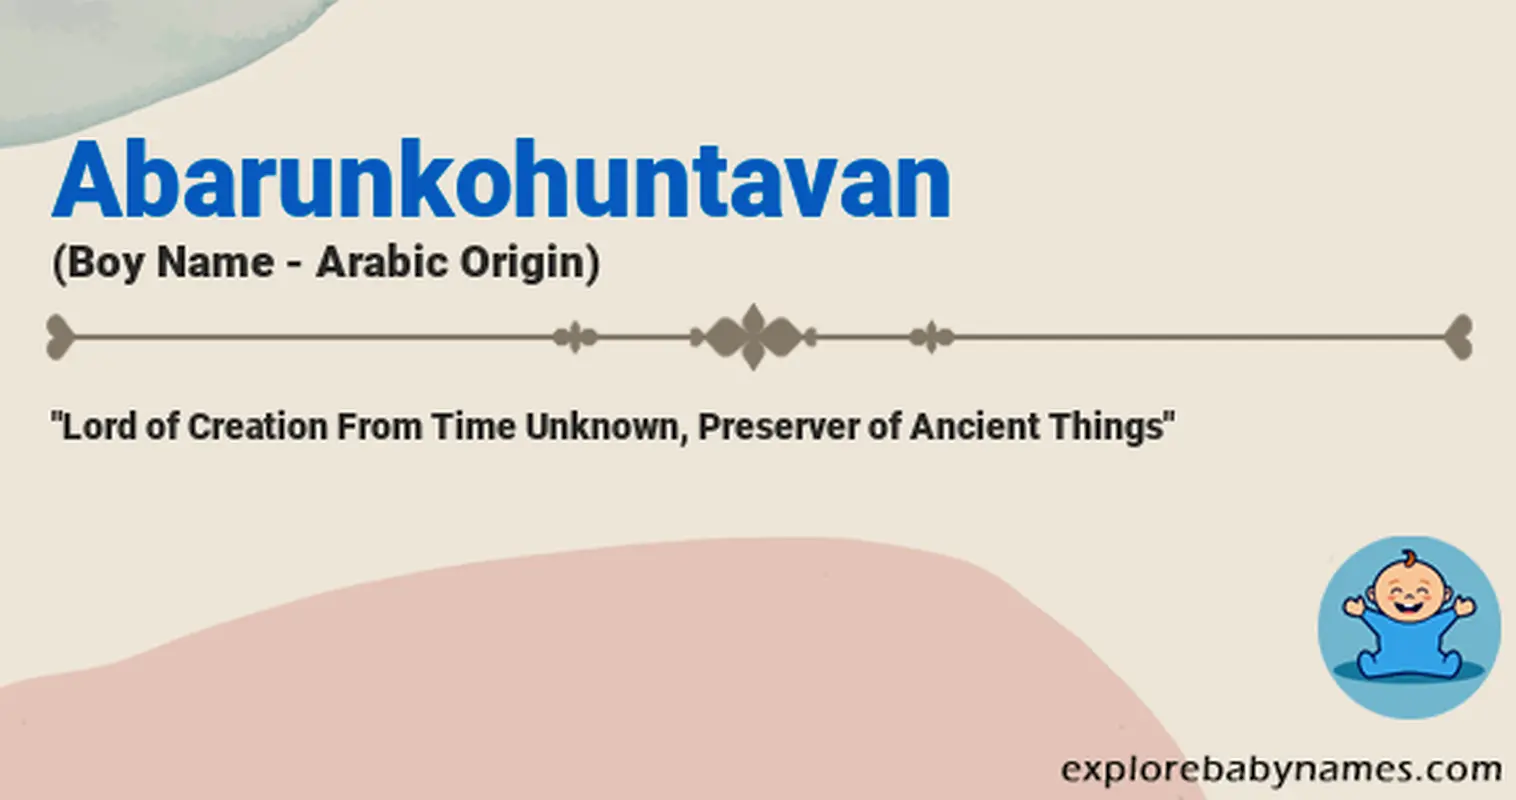 Meaning of Abarunkohuntavan